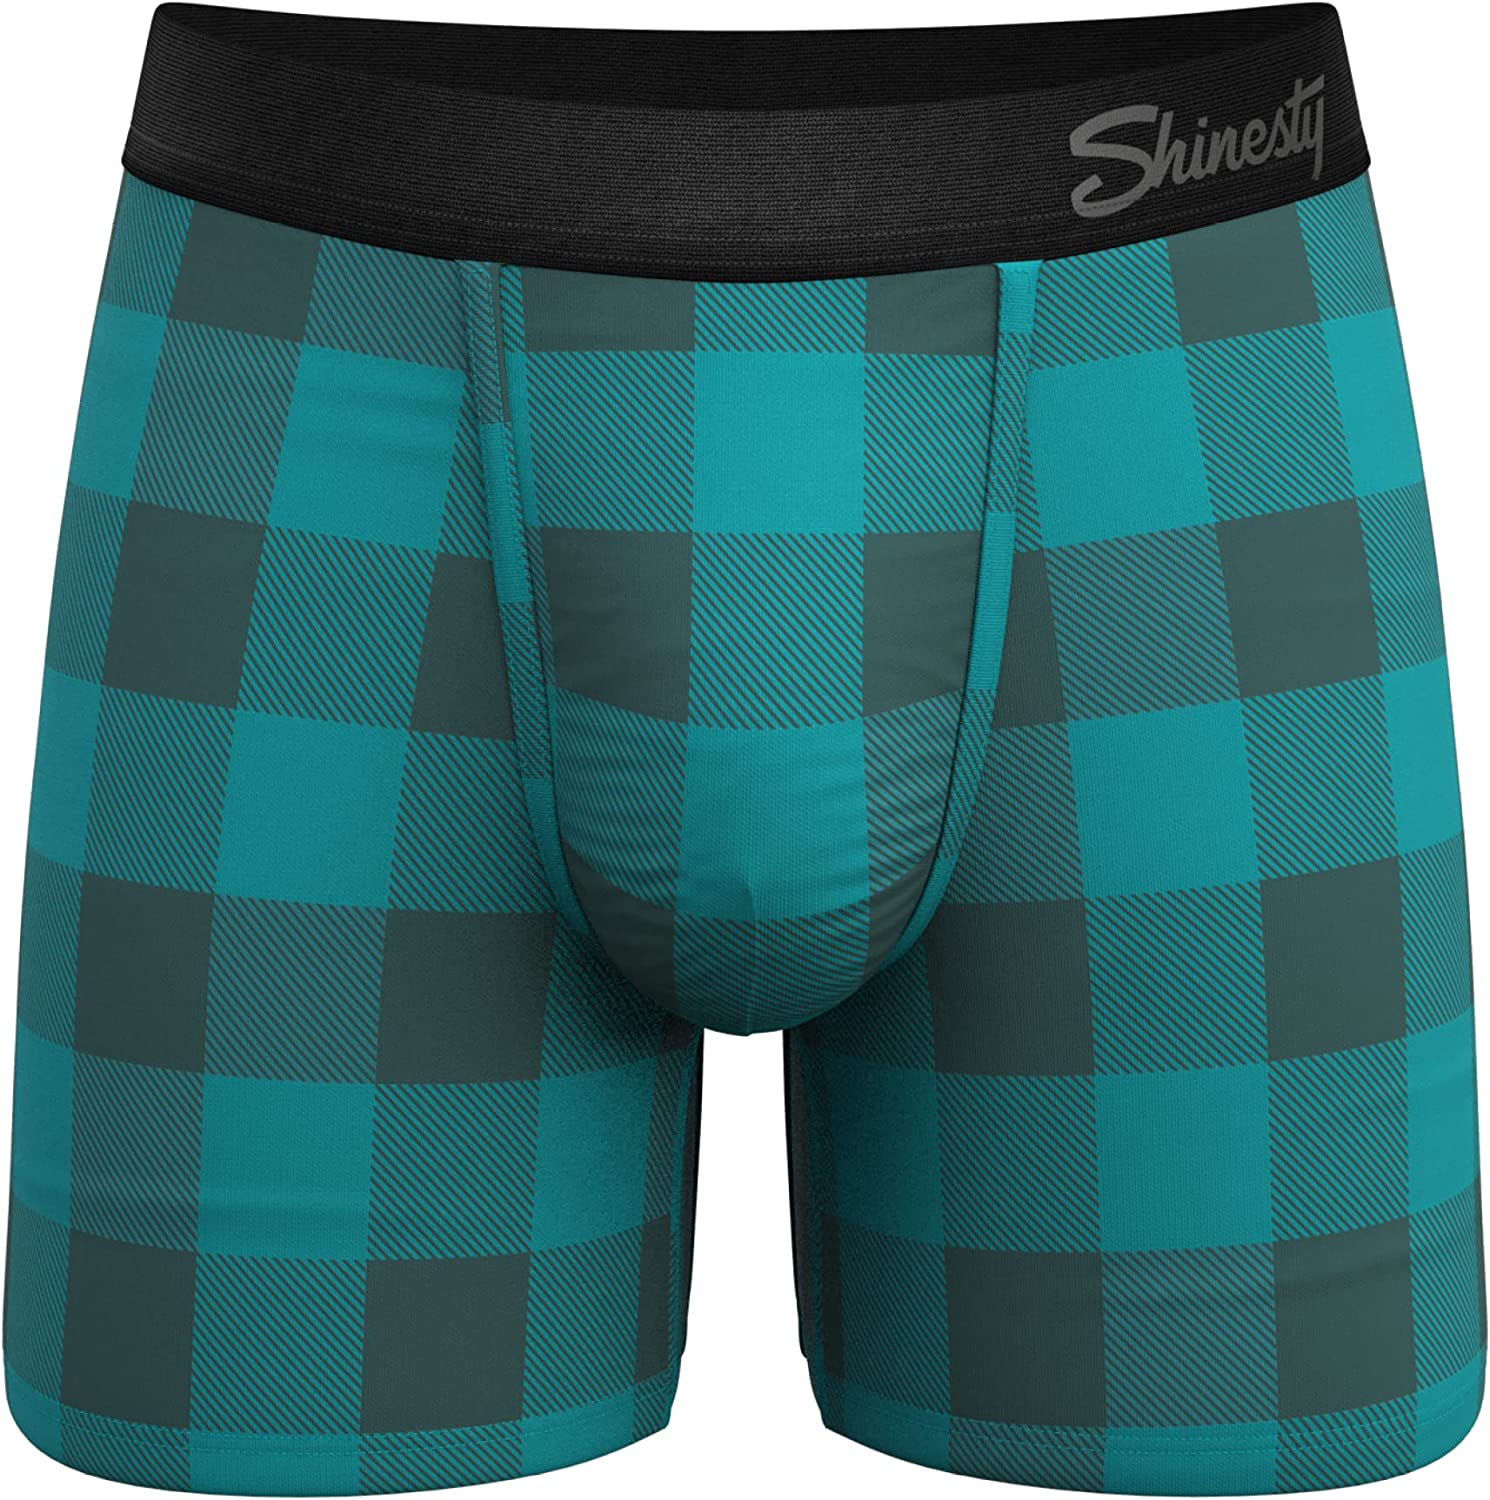 Shinesty Mens Pouch Briefs - The Jailbird Ball Hammock Underwear